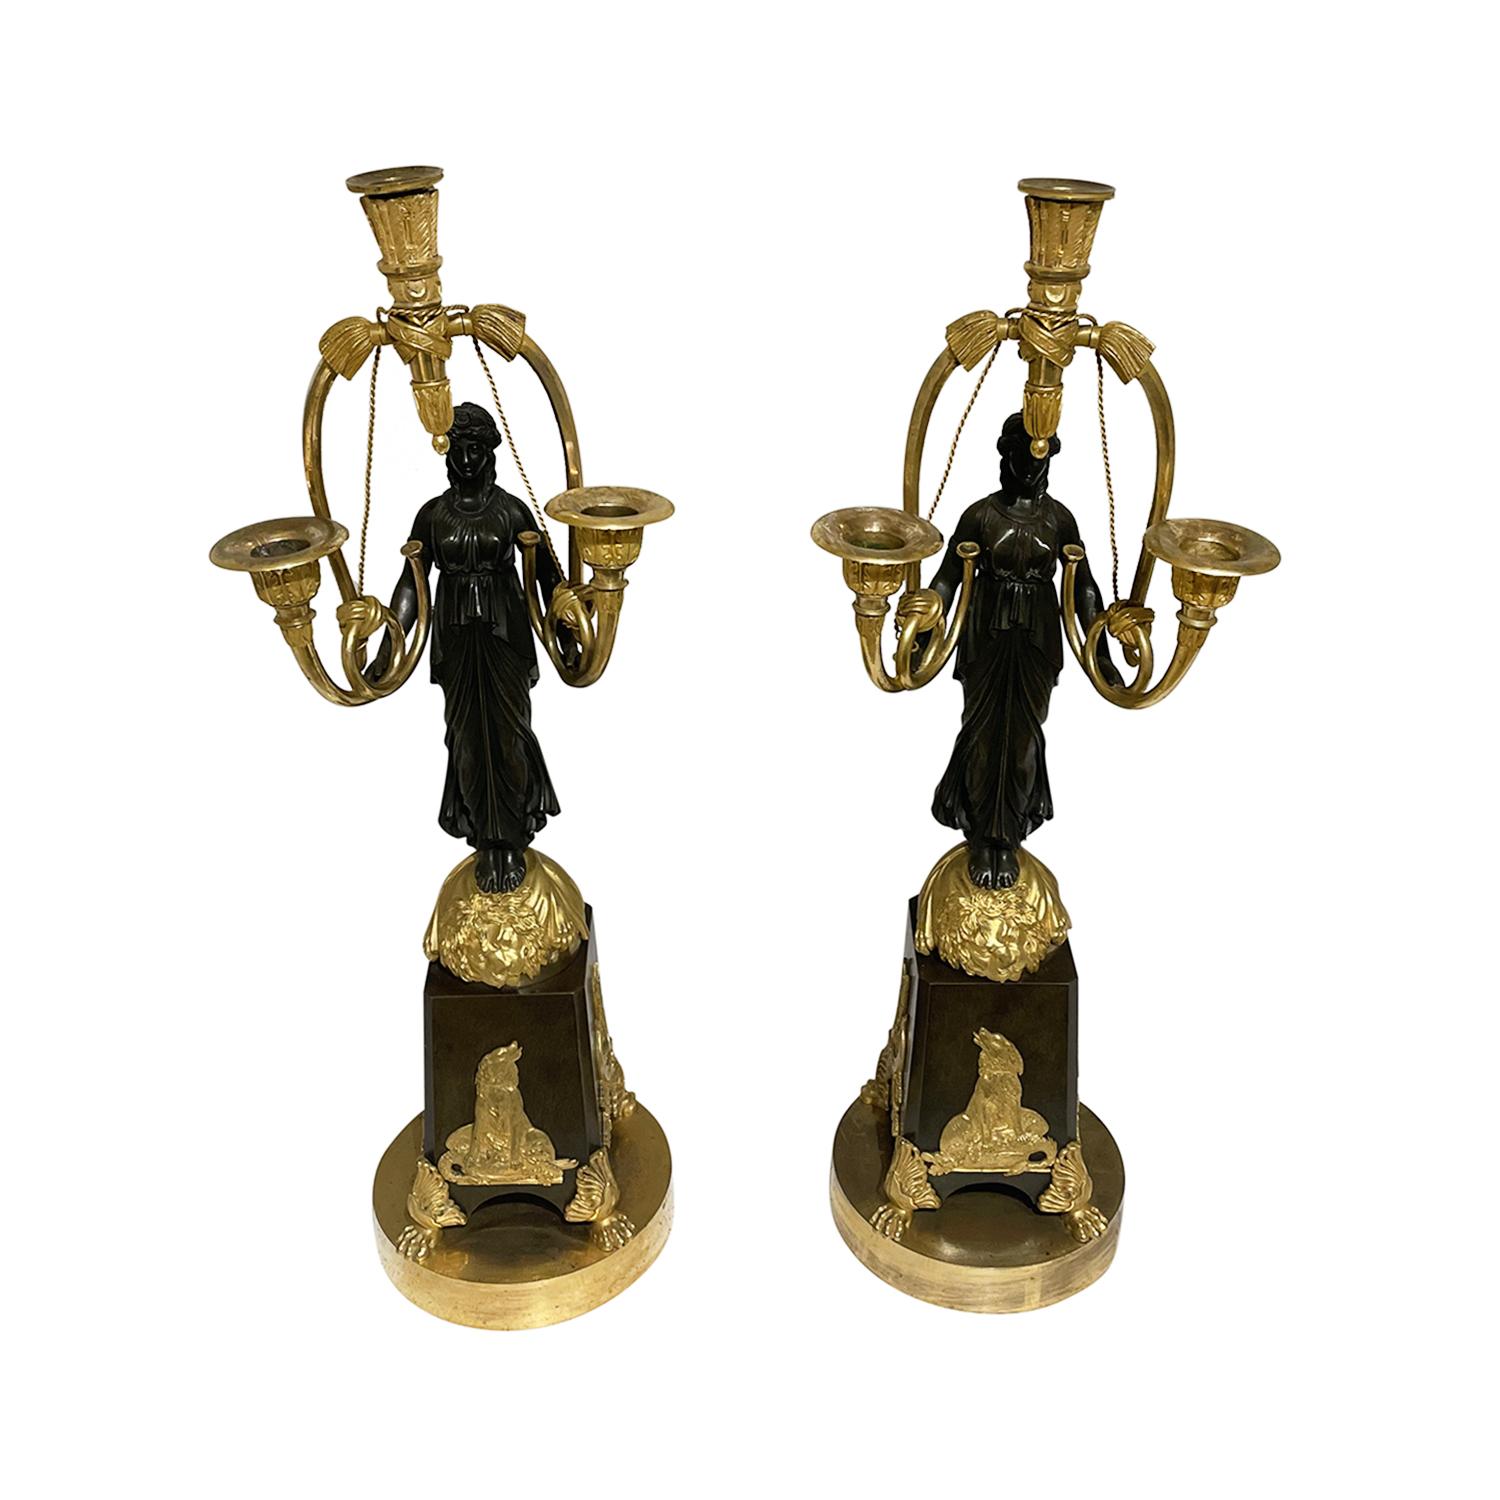 Paire de girandoles françaises anciennes, en bronze doré travaillé à la main, attribuées à Friedrich Bergenfeldt, en bon état. Chacun des bougeoirs parisiens détaillés est composé d'une femme guerrière, particularisée avec des chiens de chasse, une